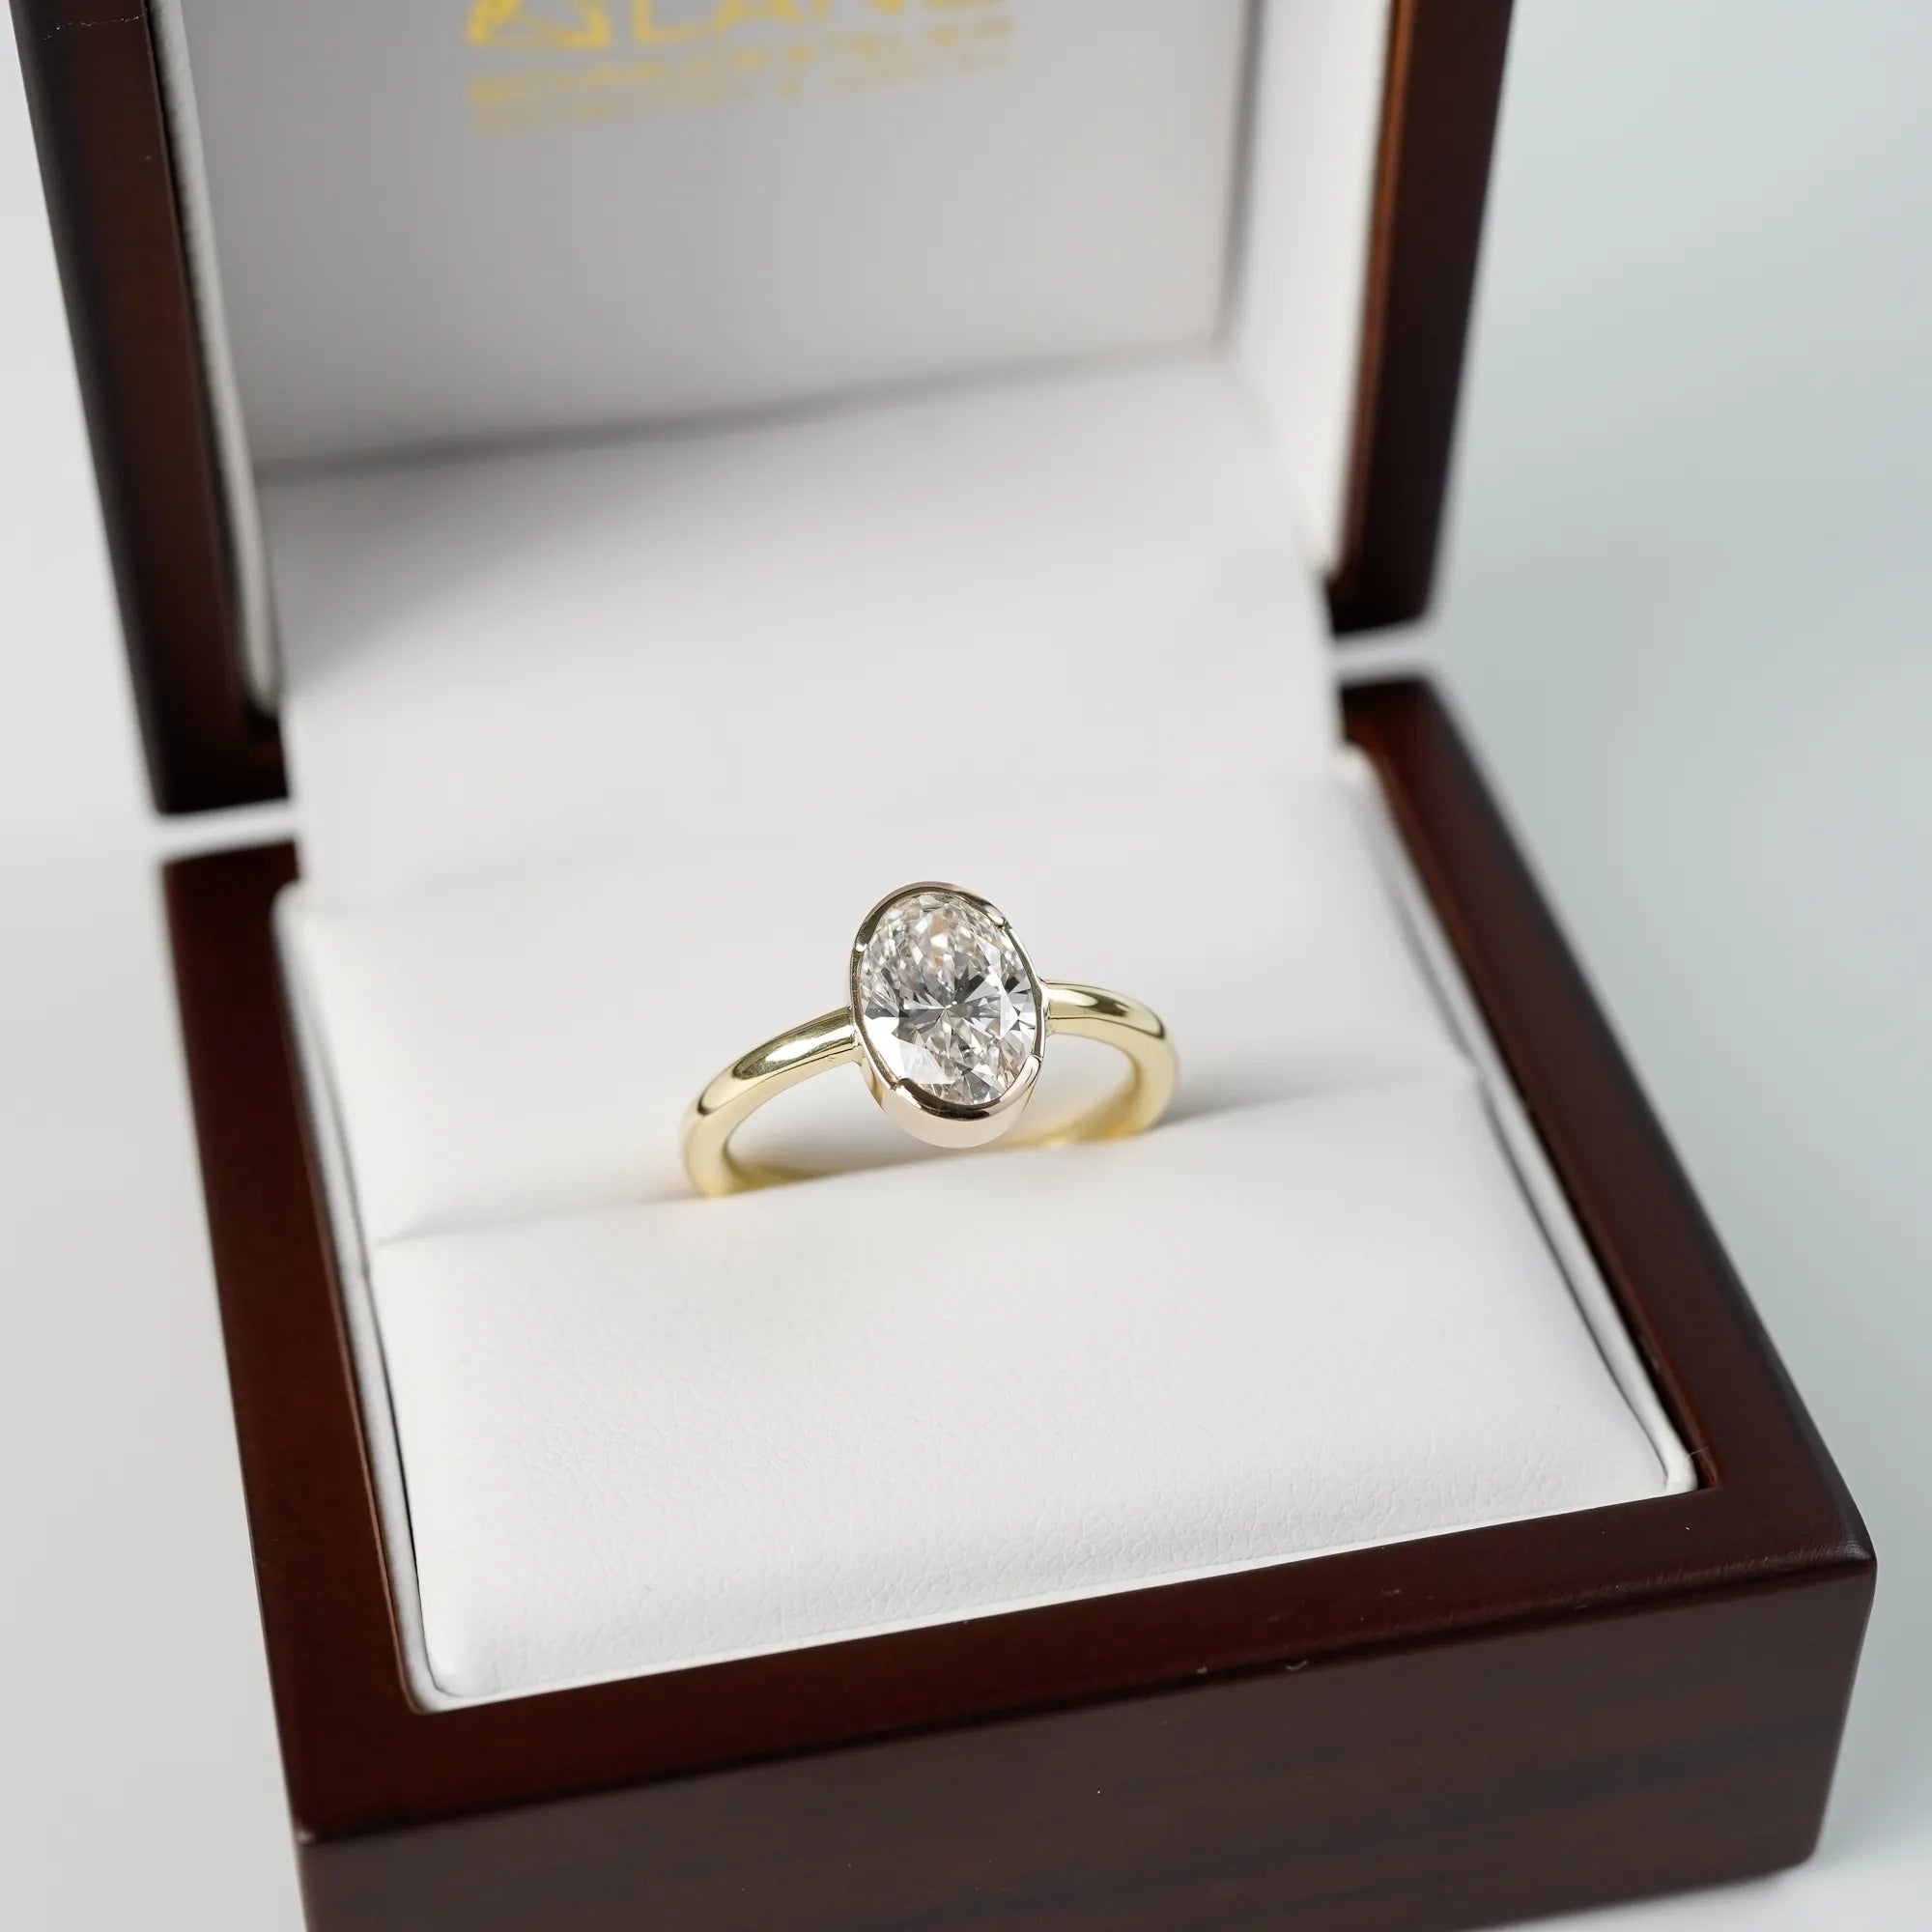 Der in Gelbgold gefertigte Verlobungsring "Gleaming Love" mit einem großen Labor-Diamanten mit 2.03ct steck in dessen hölzerner Schmuck-Verpackung